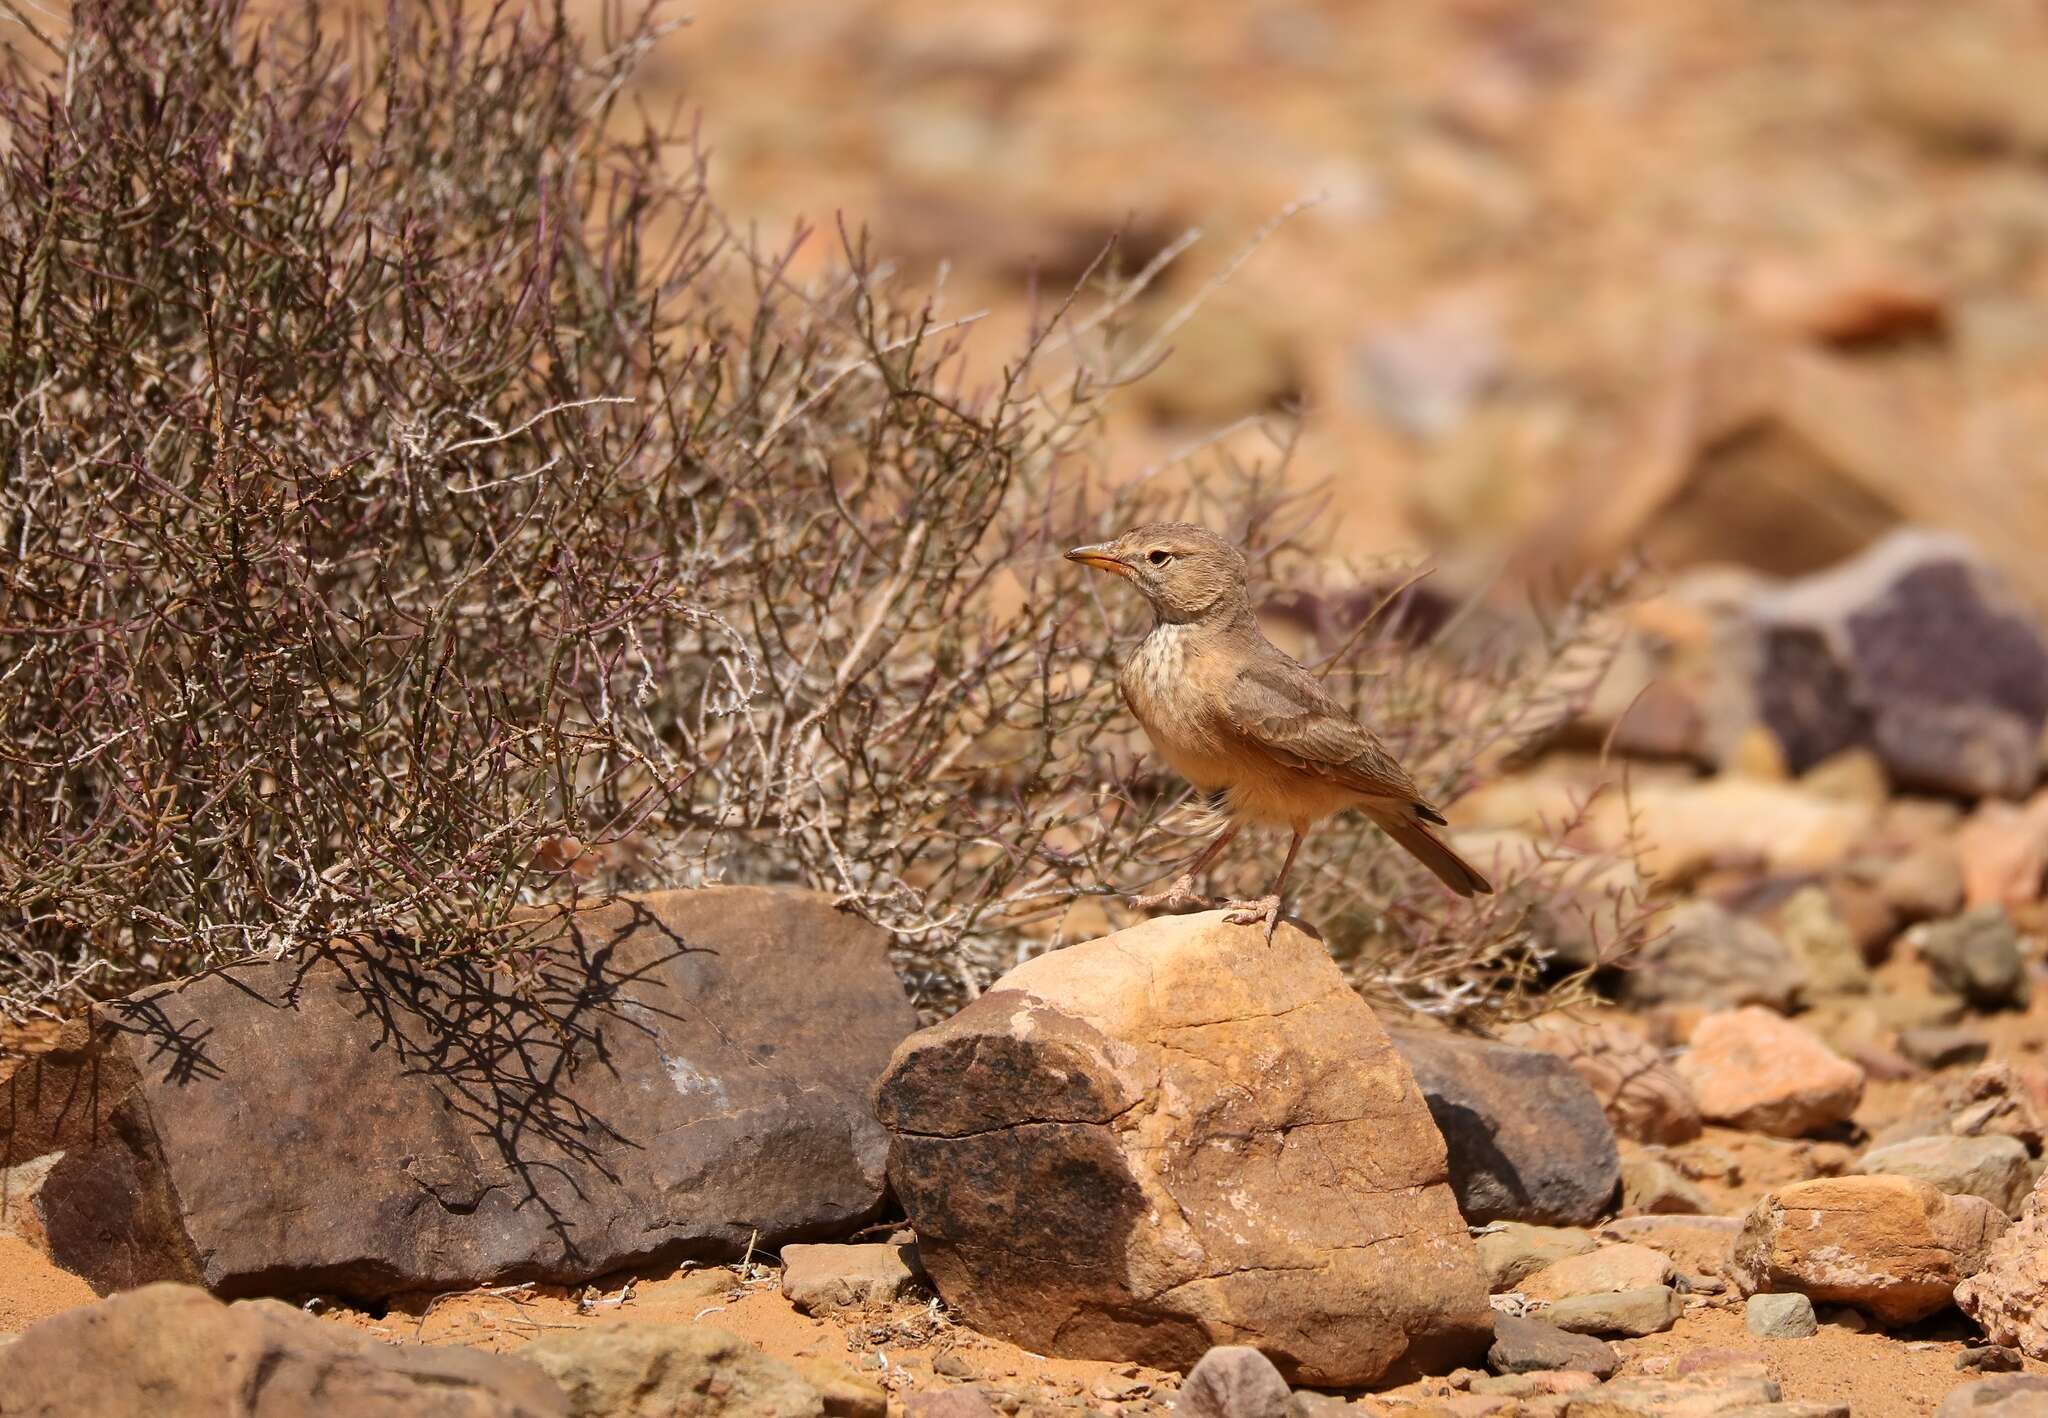 Image of Desert Lark